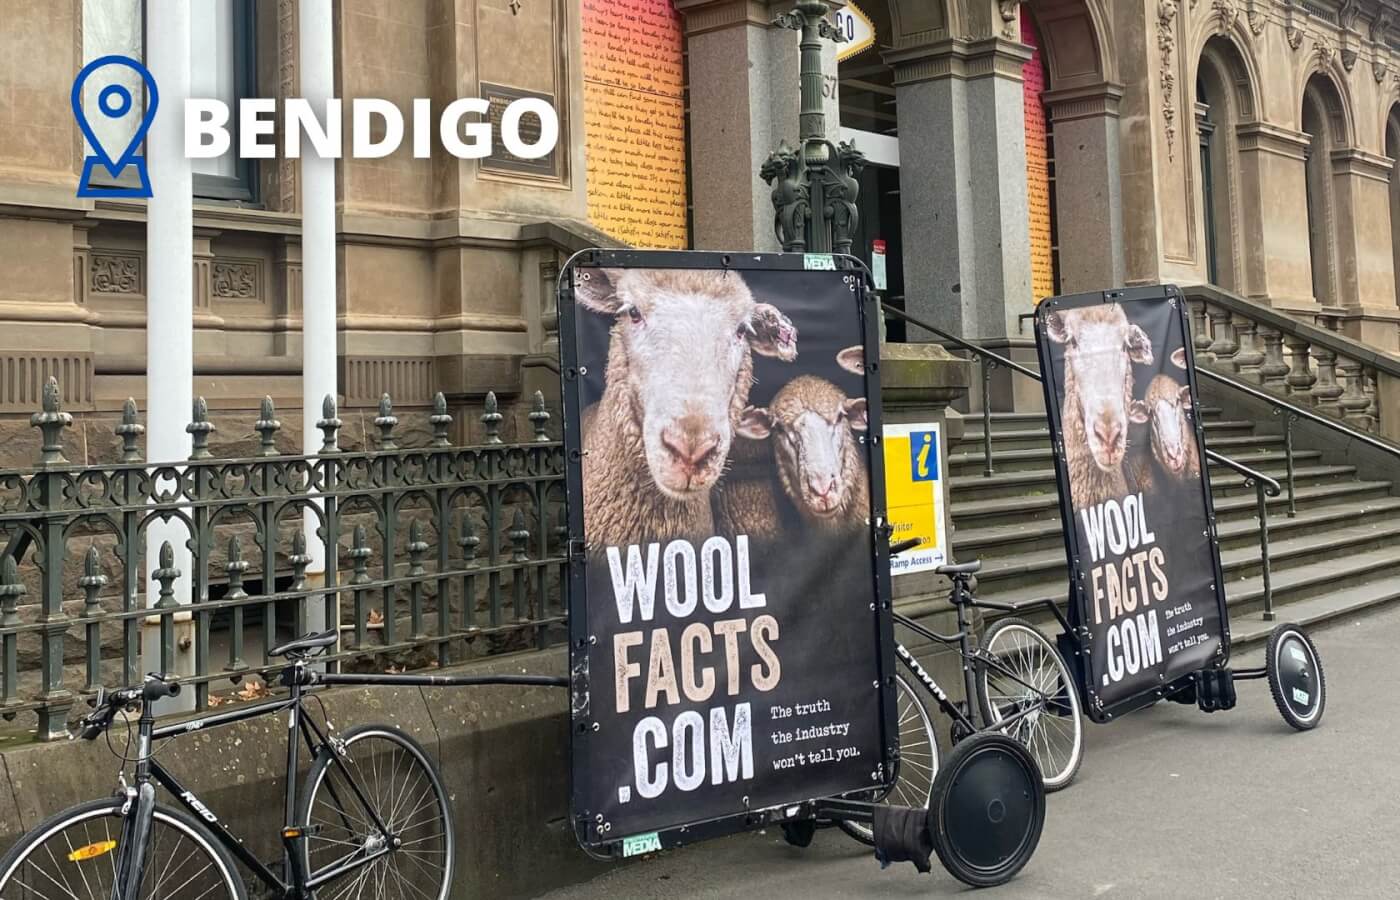 PETA’s Sheep Show Surprise in Bendigo